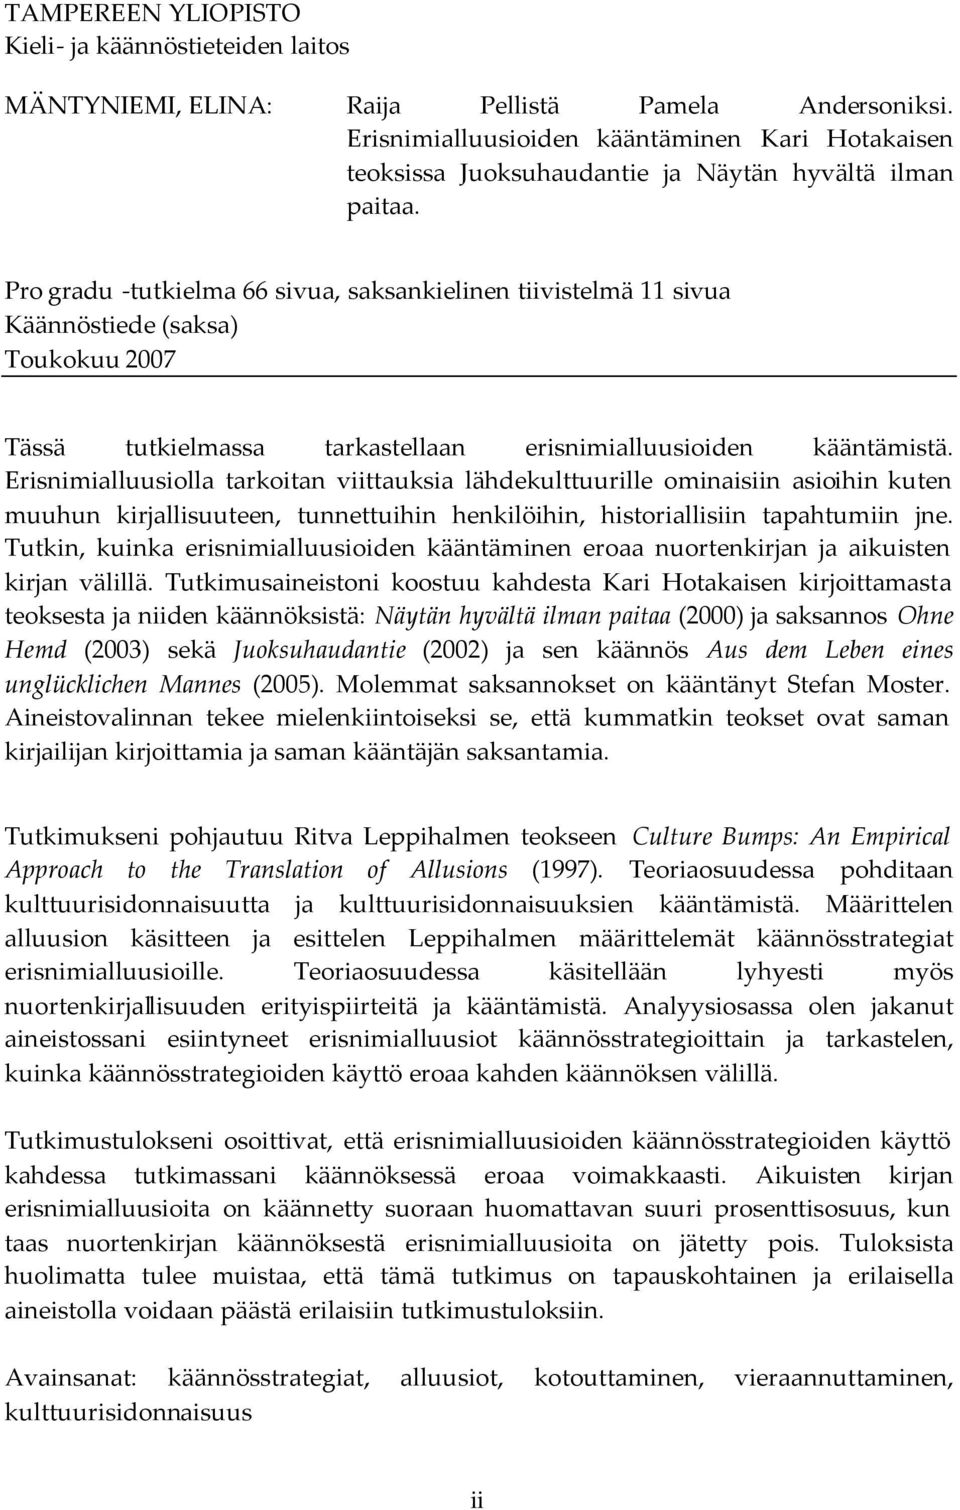 Pro gradu -tutkielma 66 sivua, saksankielinen tiivistelmä 11 sivua Käännöstiede (saksa) Toukokuu 2007 Tässä tutkielmassa tarkastellaan erisnimialluusioiden kääntämistä.